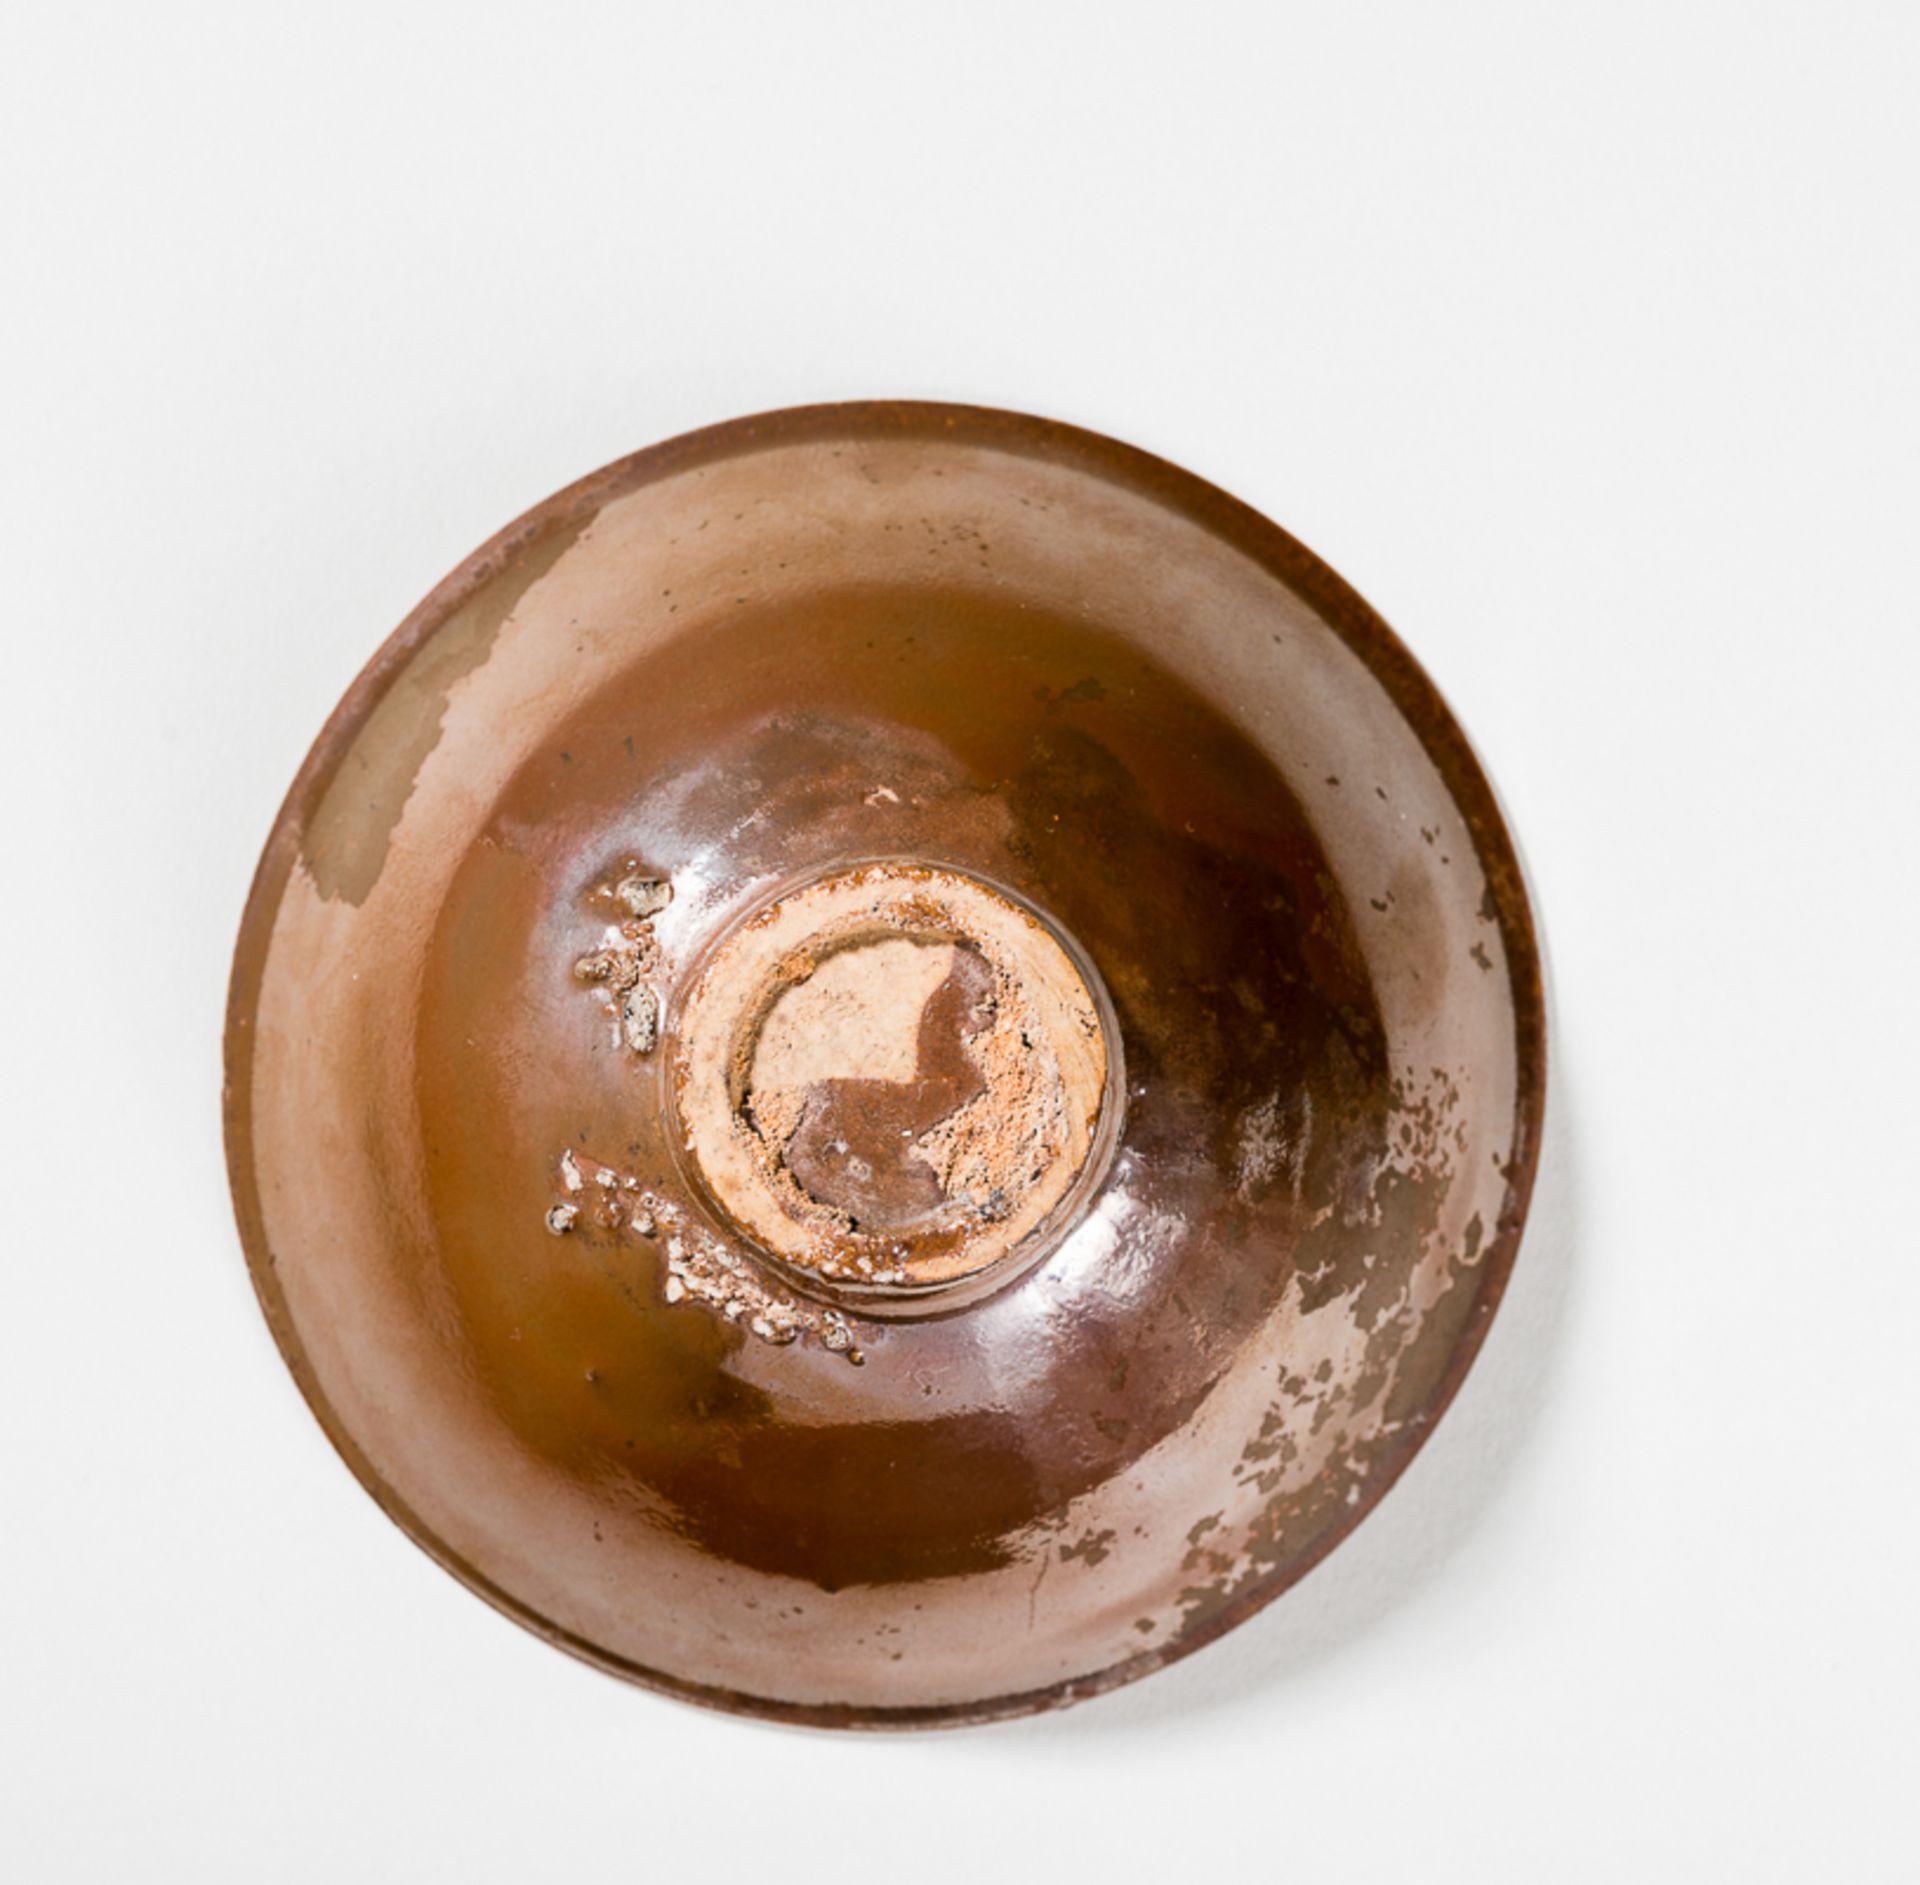 SCHALE MIT ROSTBRAUNER GLASURGlasierte Keramik. China, Nördl. Song bis Jin, 11. bis 12. Jh.Eine - Bild 3 aus 4